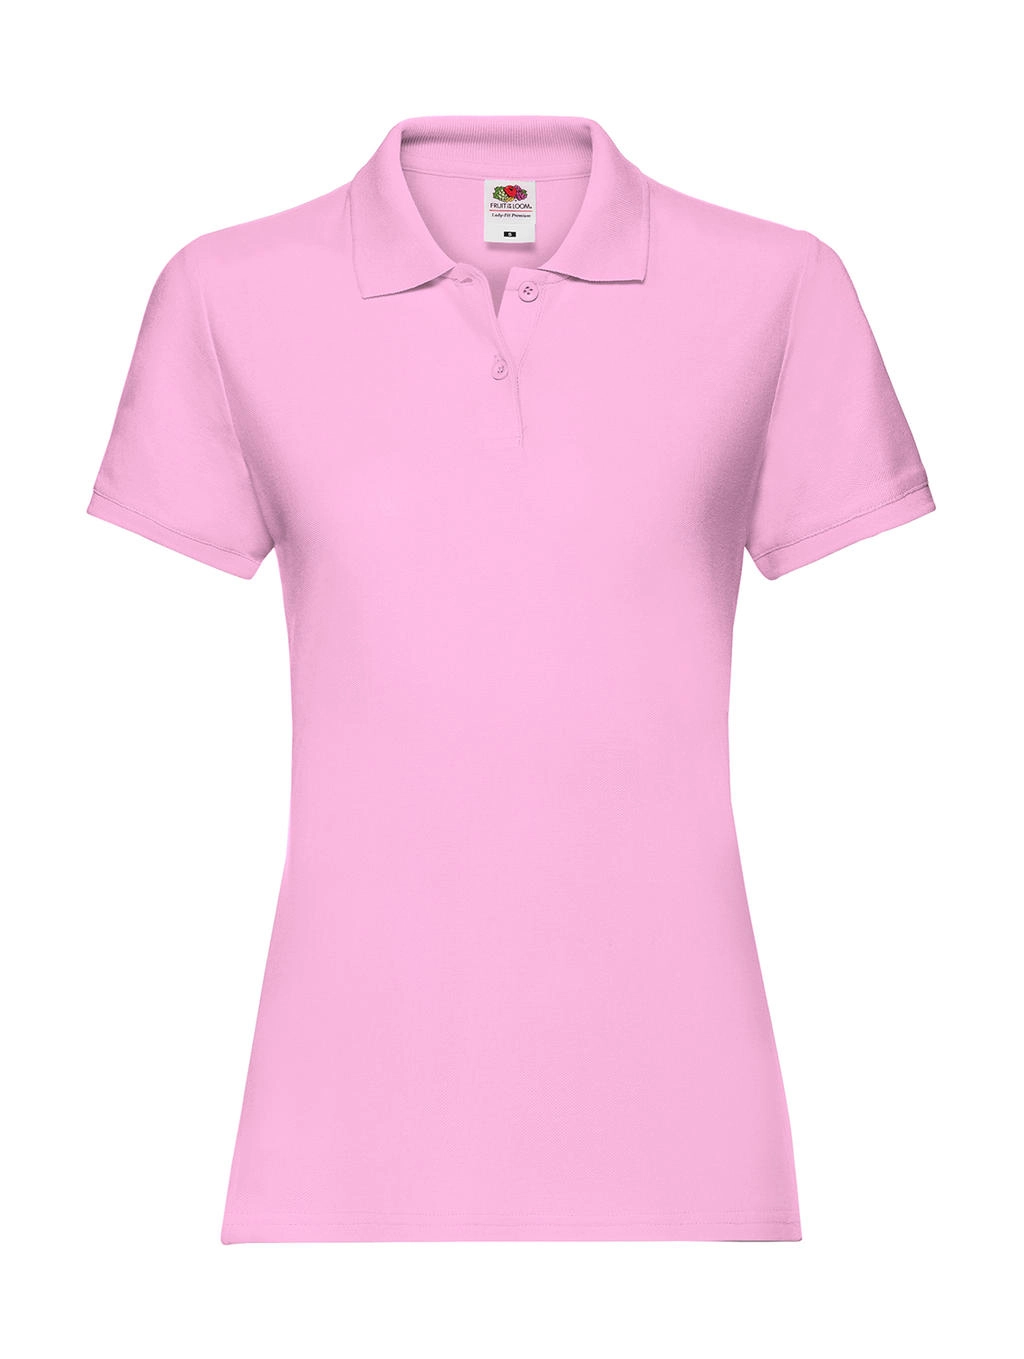 Ladies` Premium Polo zum Besticken und Bedrucken in der Farbe Light Pink mit Ihren Logo, Schriftzug oder Motiv.